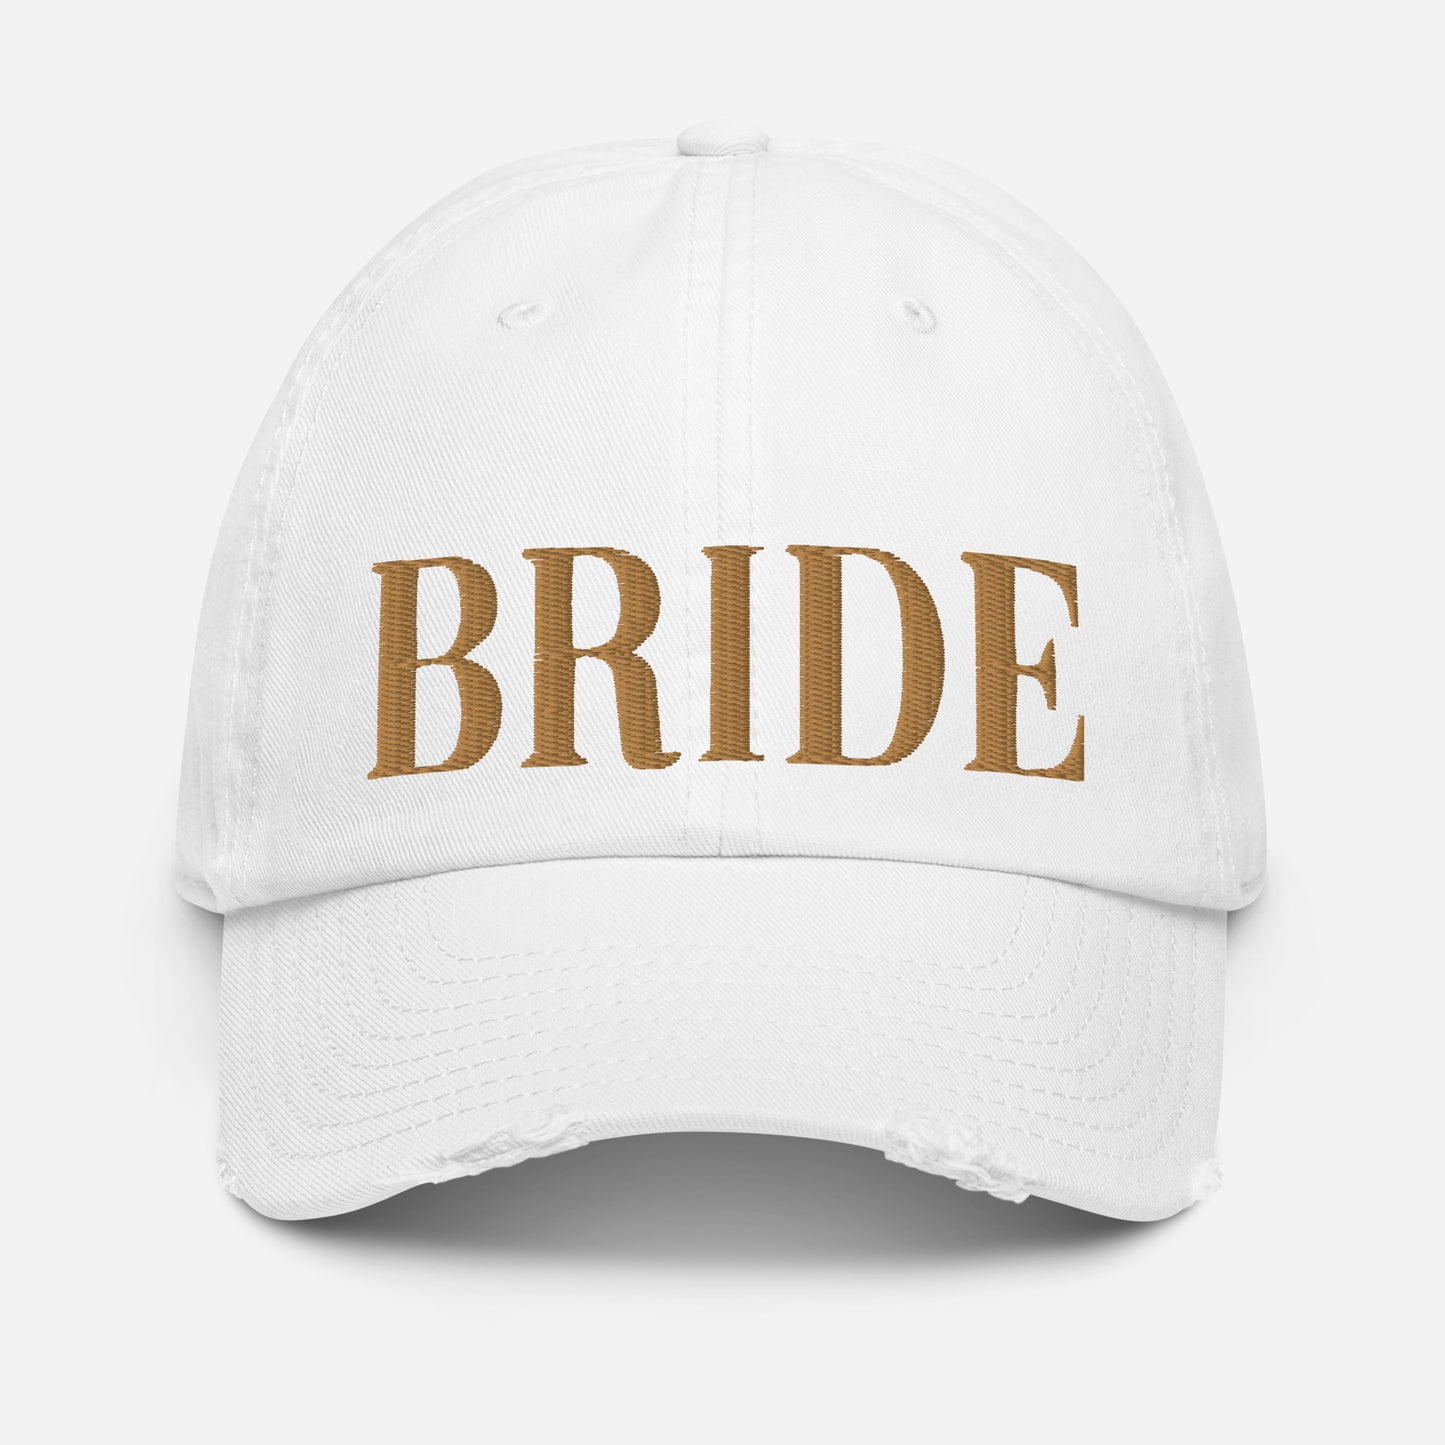 Bride Caps